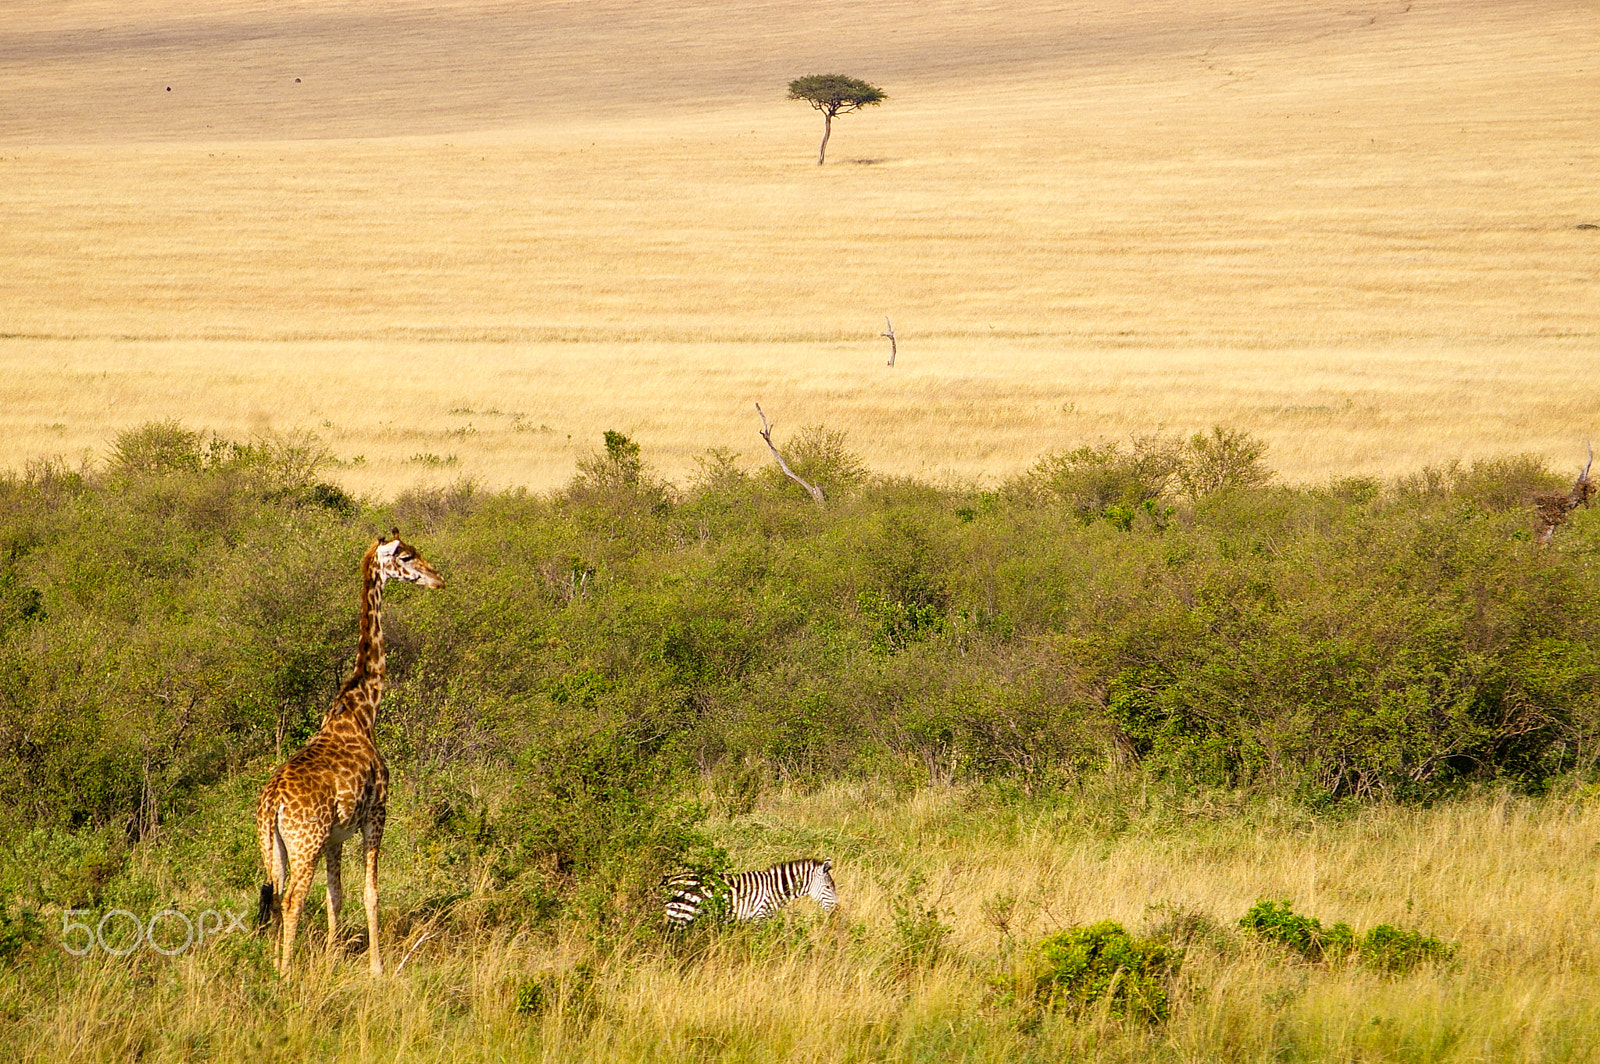 Pentax K100D + Pentax smc DA 50-200mm F4-5.6 ED sample photo. Giraffe in the maasai mara, kenya photography